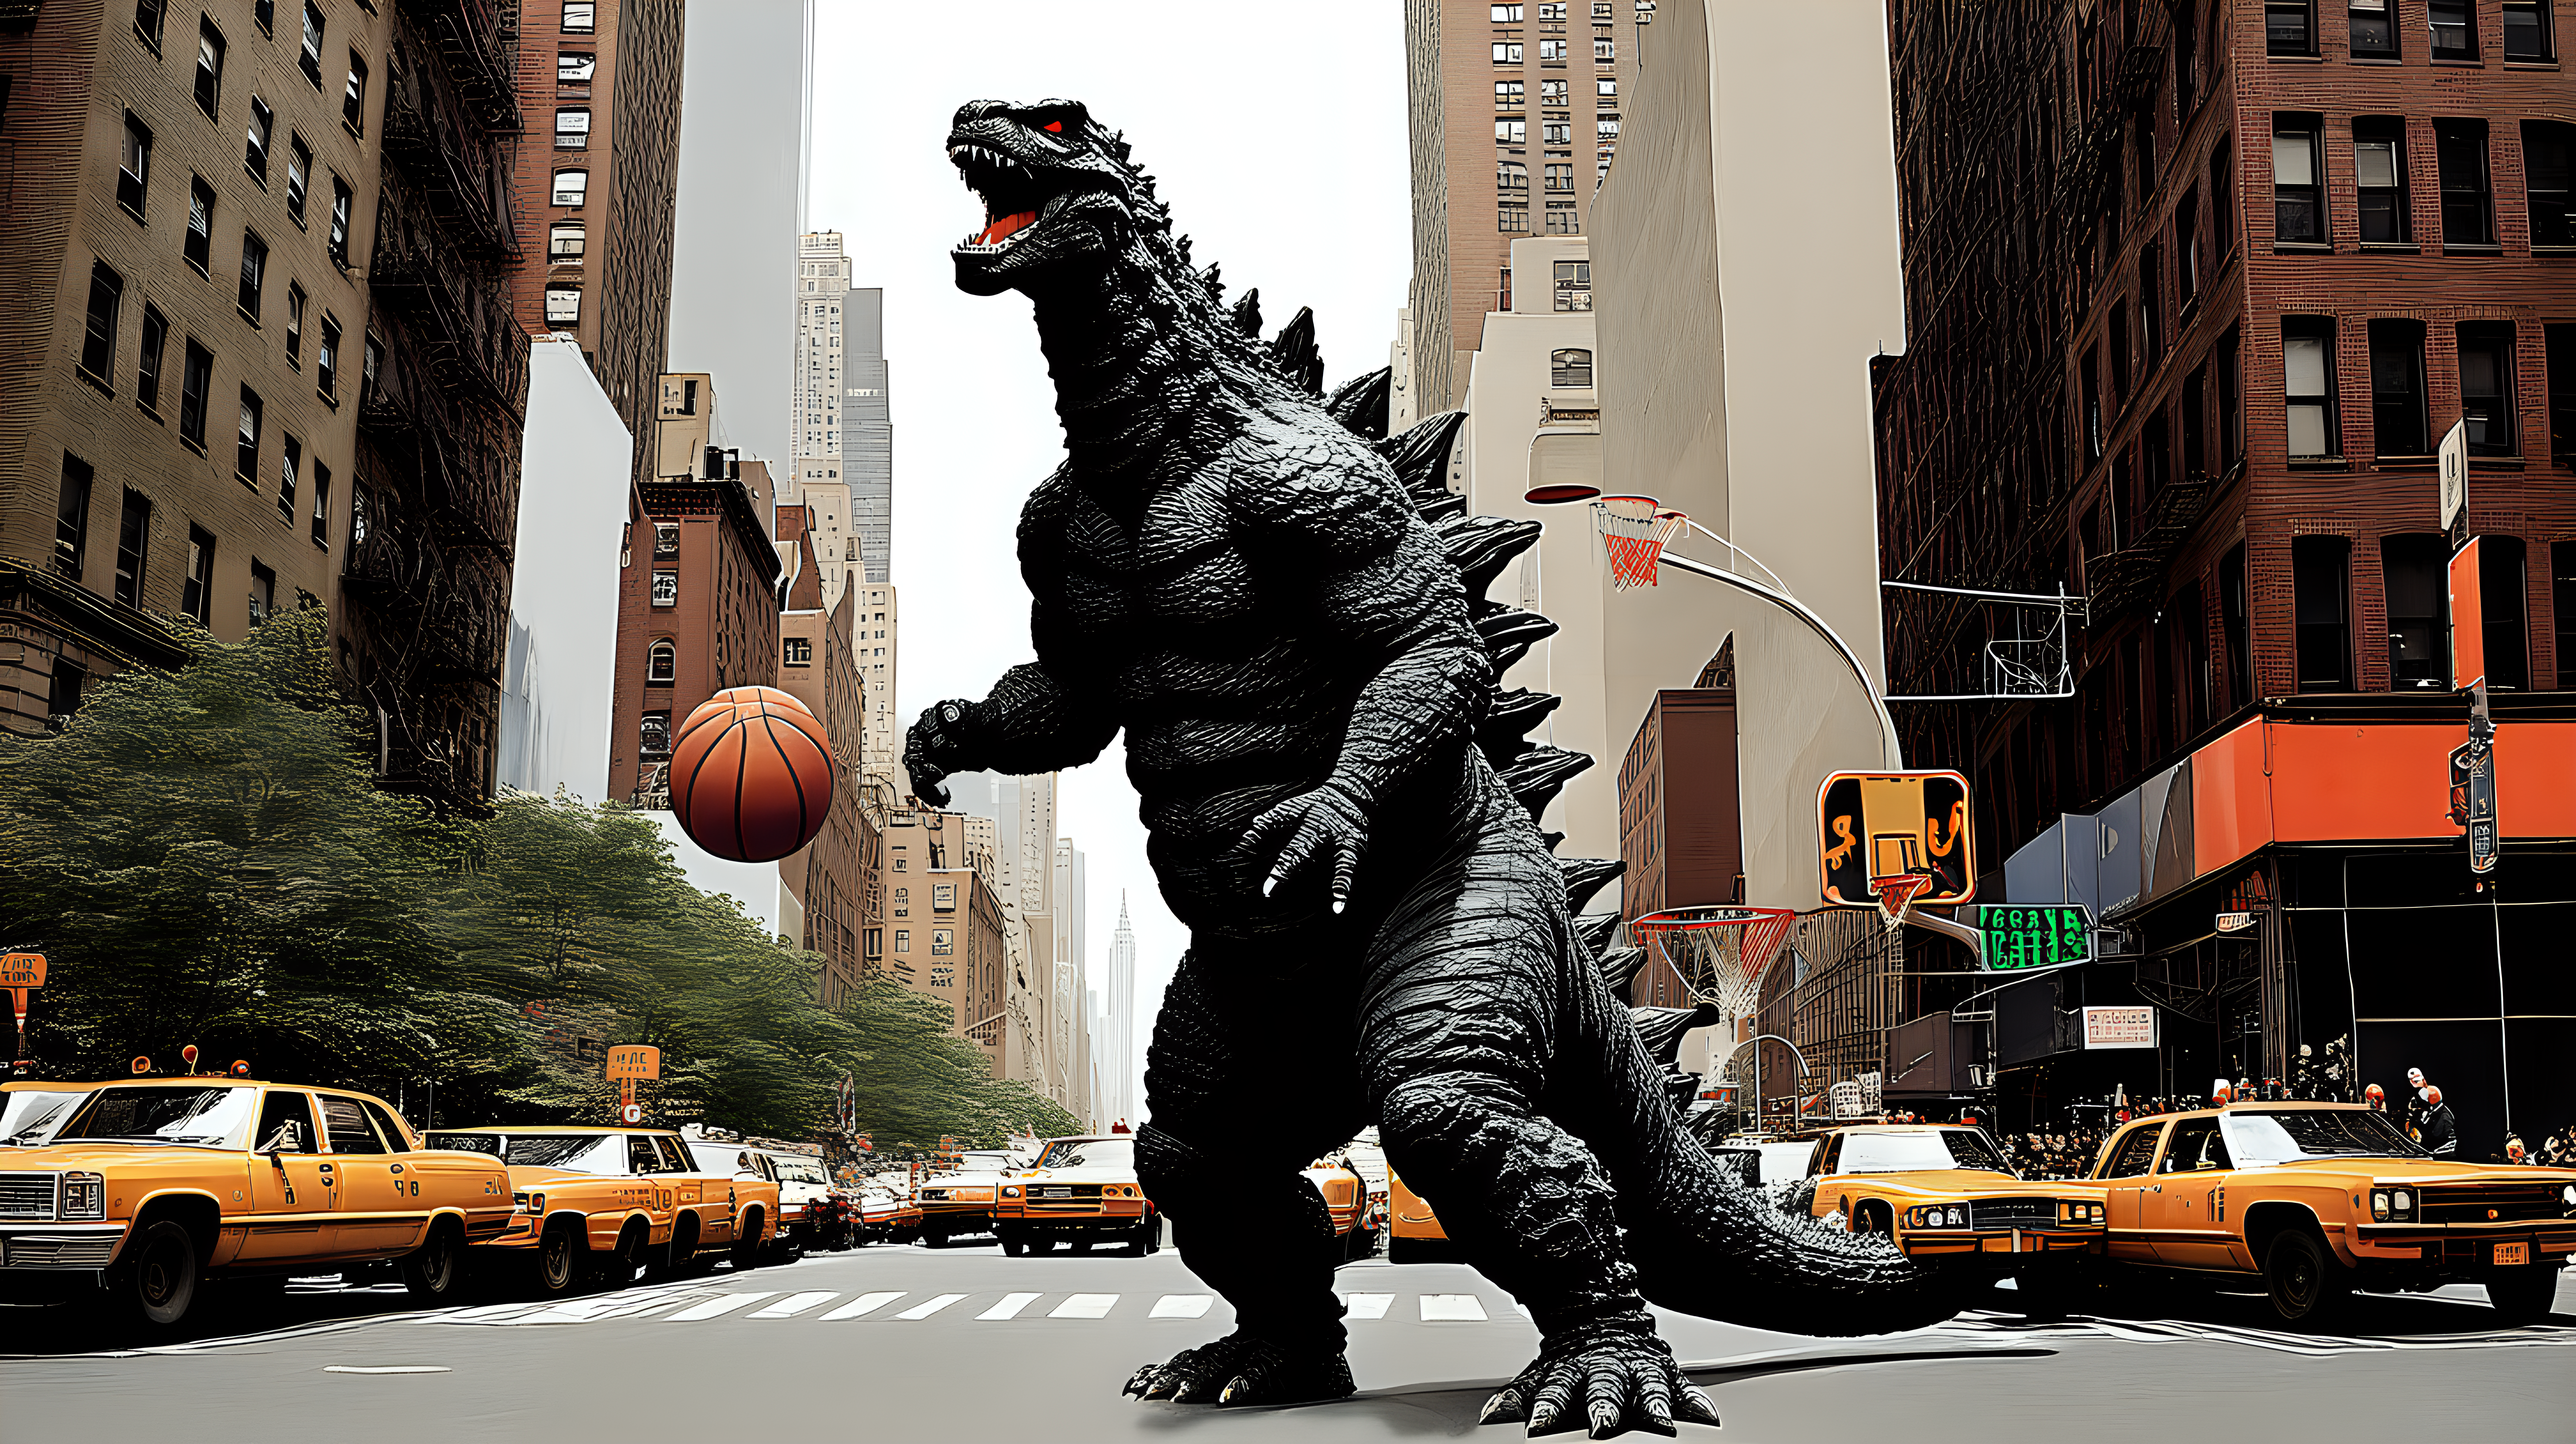 Godzilla playing basketball in NYC